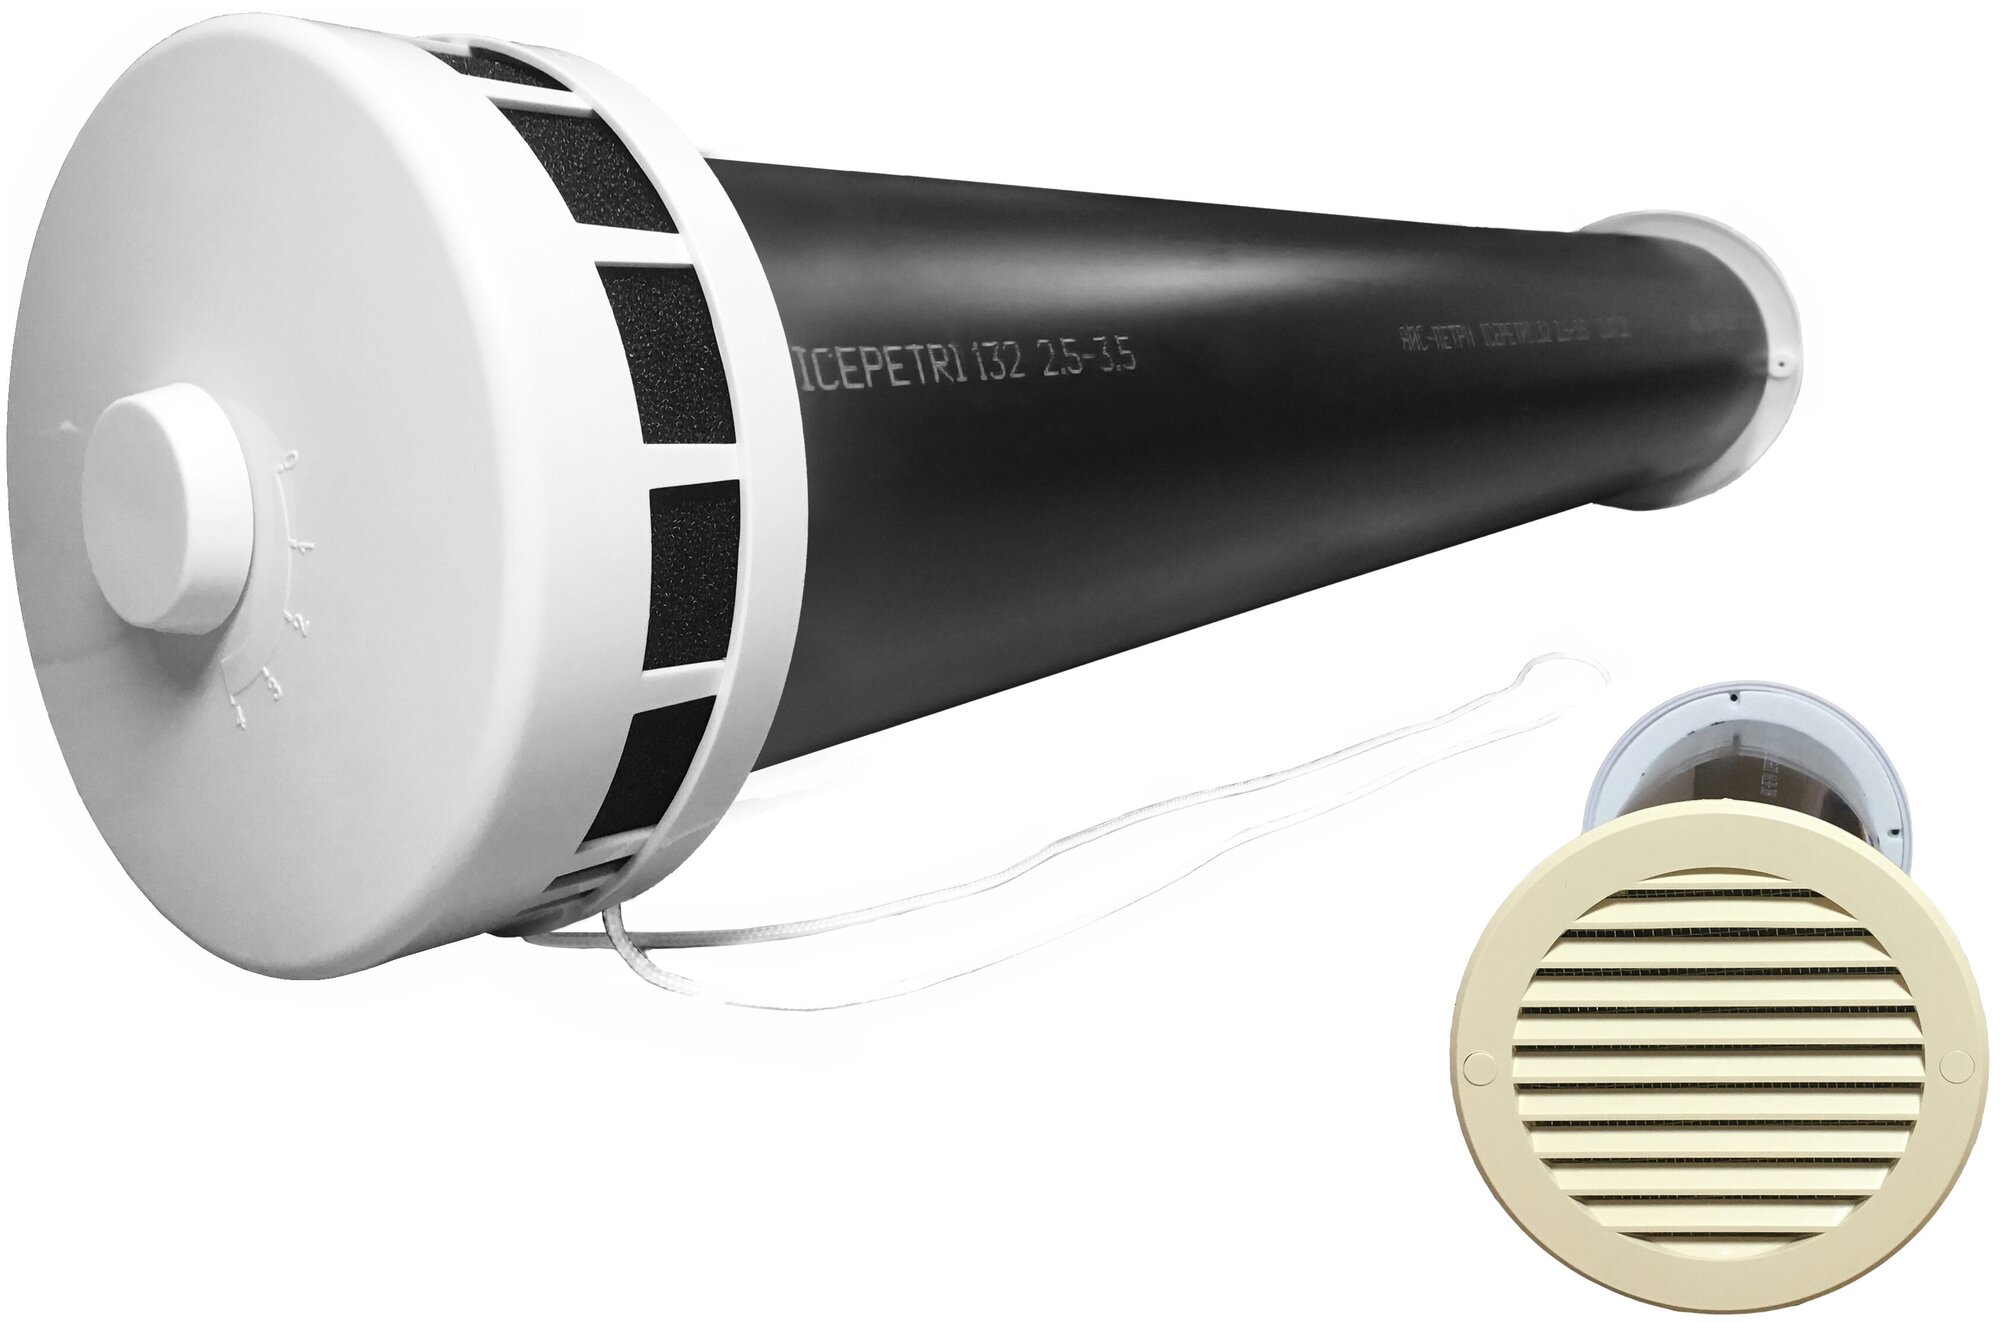 Приточный клапан КИВ-125 icepetri 800мм с ППУ и ivory ASA-пластиковой решеткой - фотография № 1